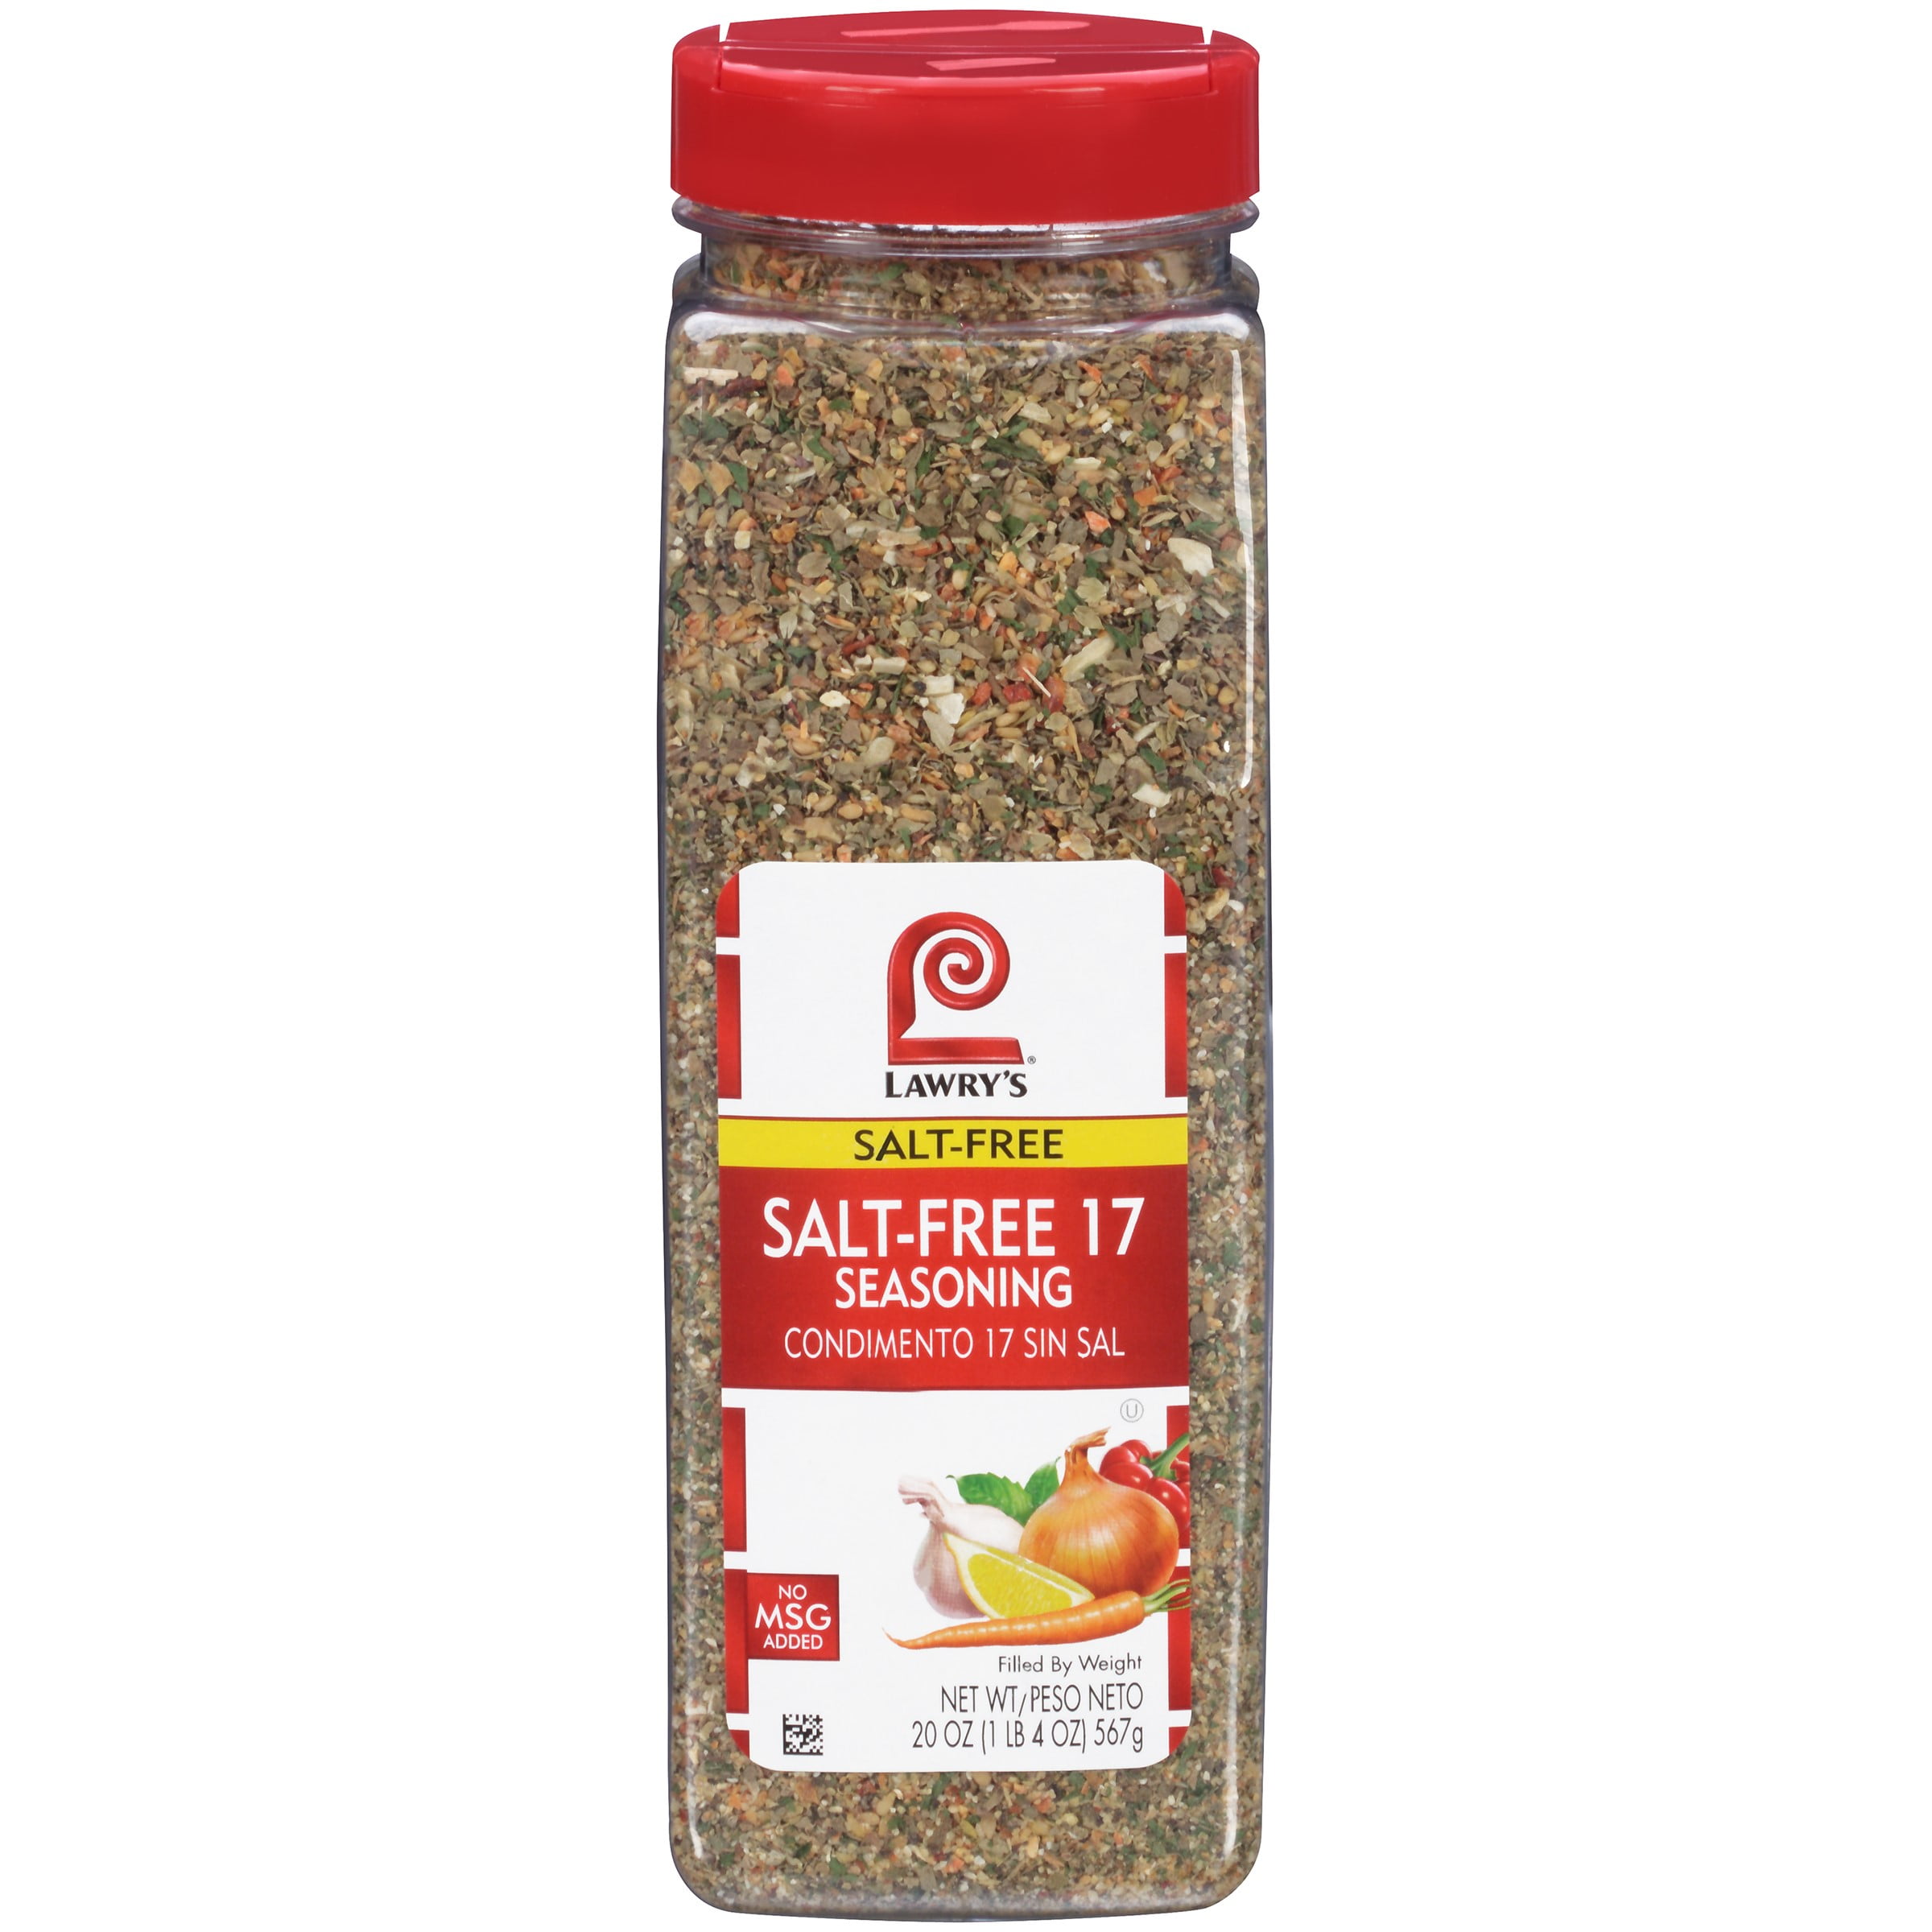 Lawry's Salt-Free 17 Seasoning - 10 oz jar